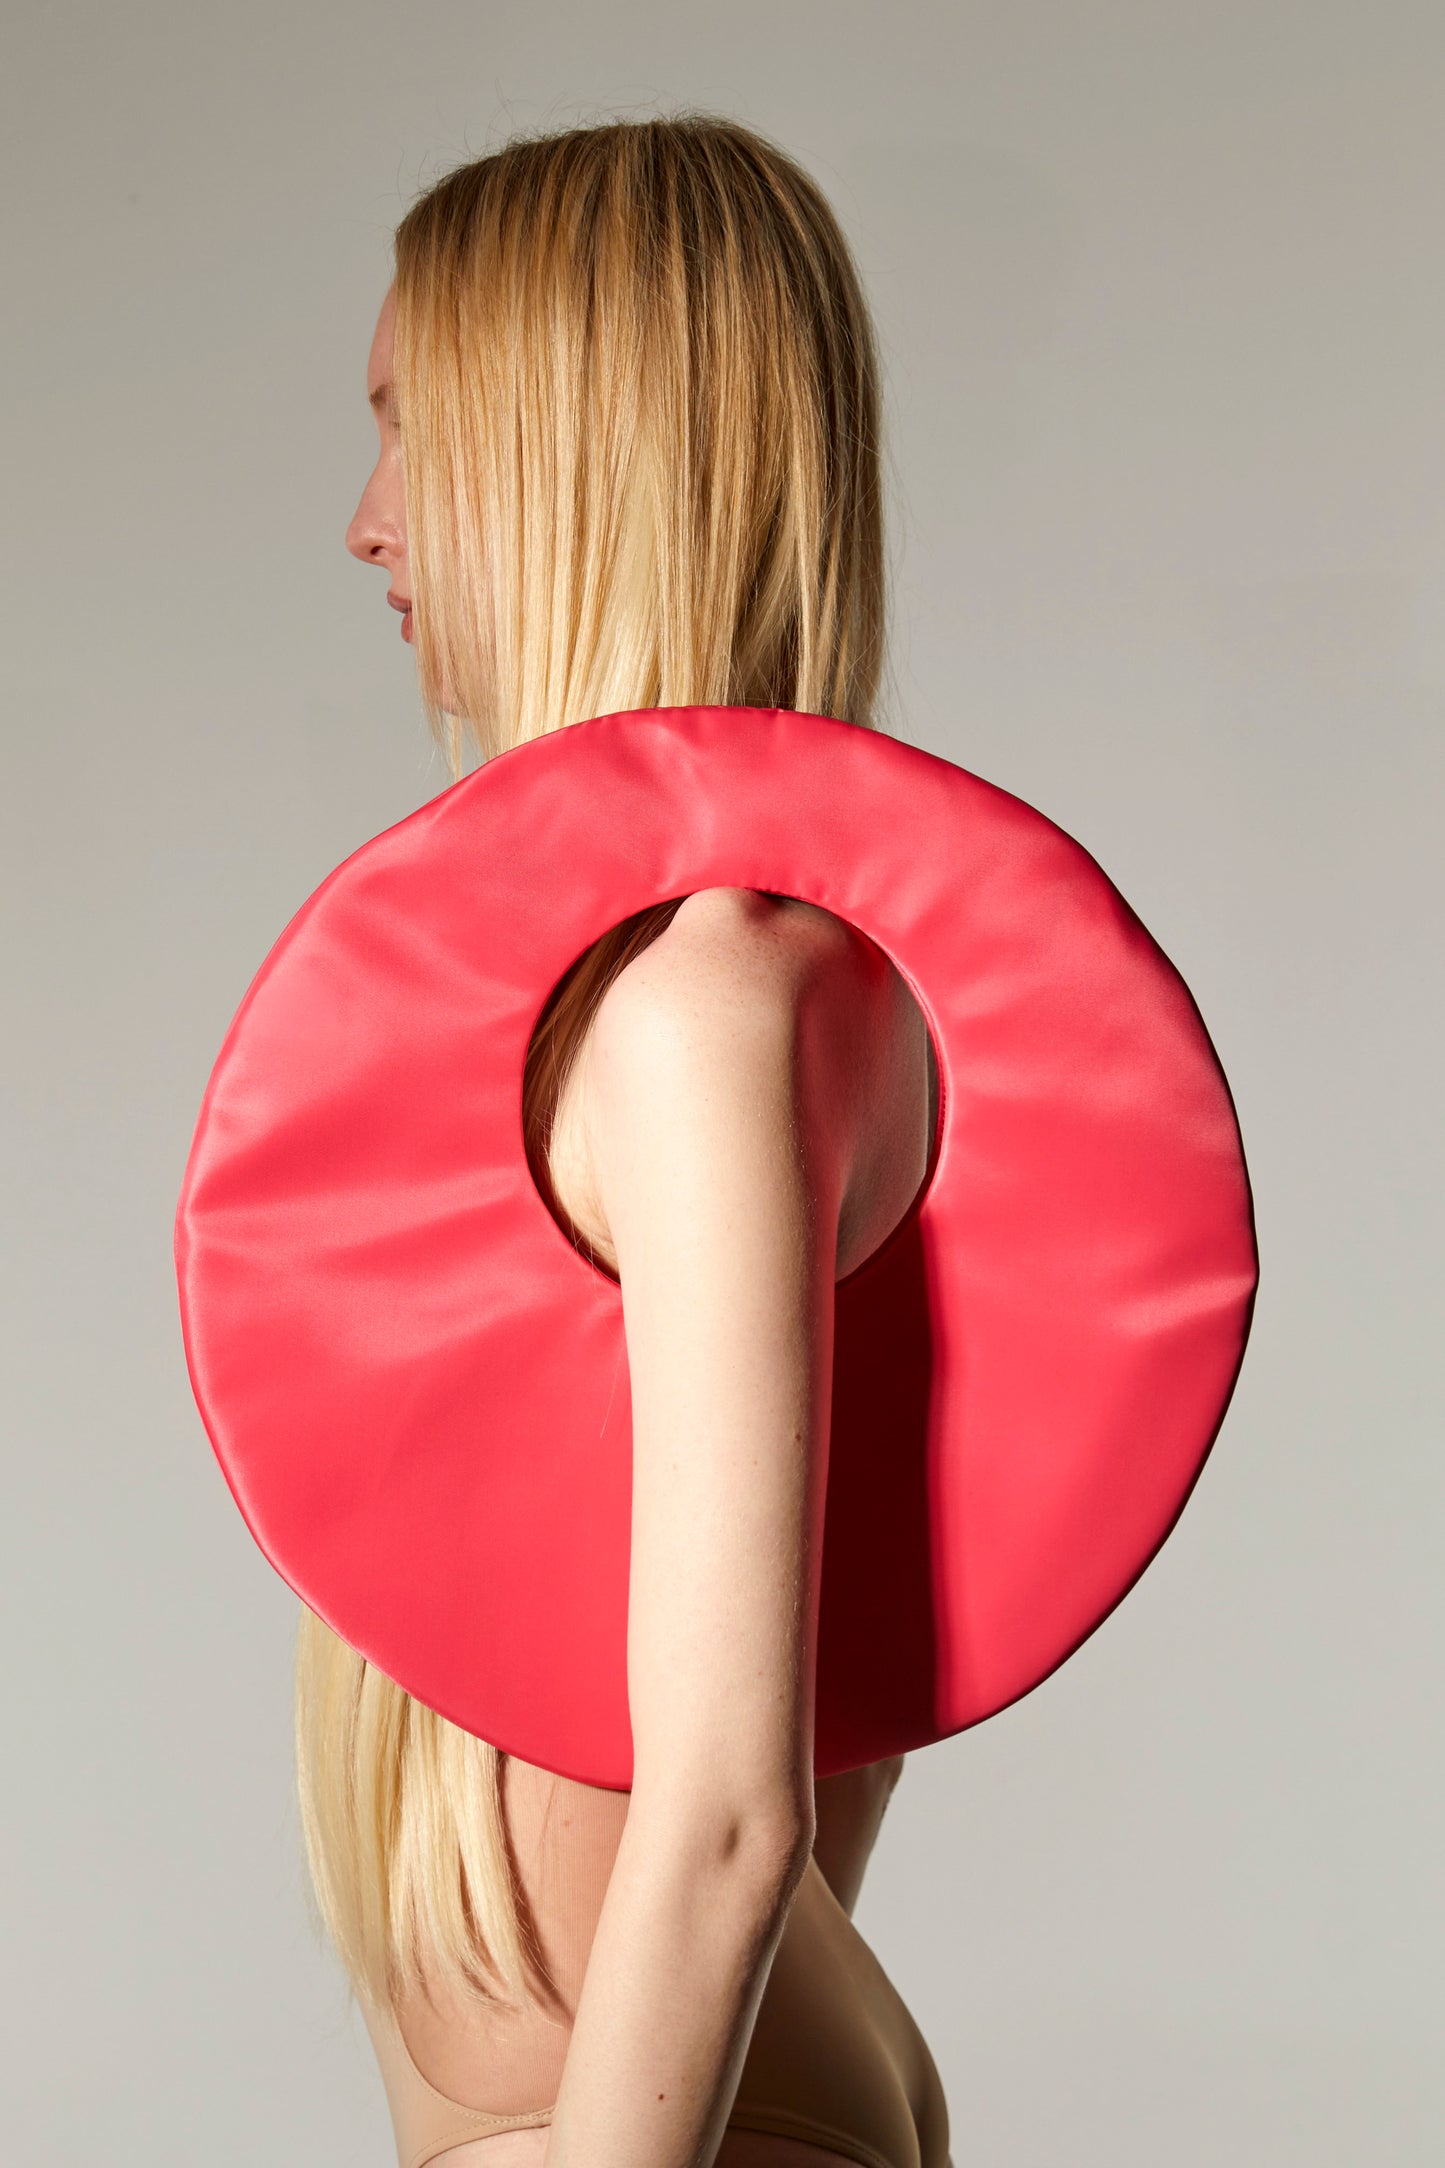 Large Nylon Circle Bag - Pink